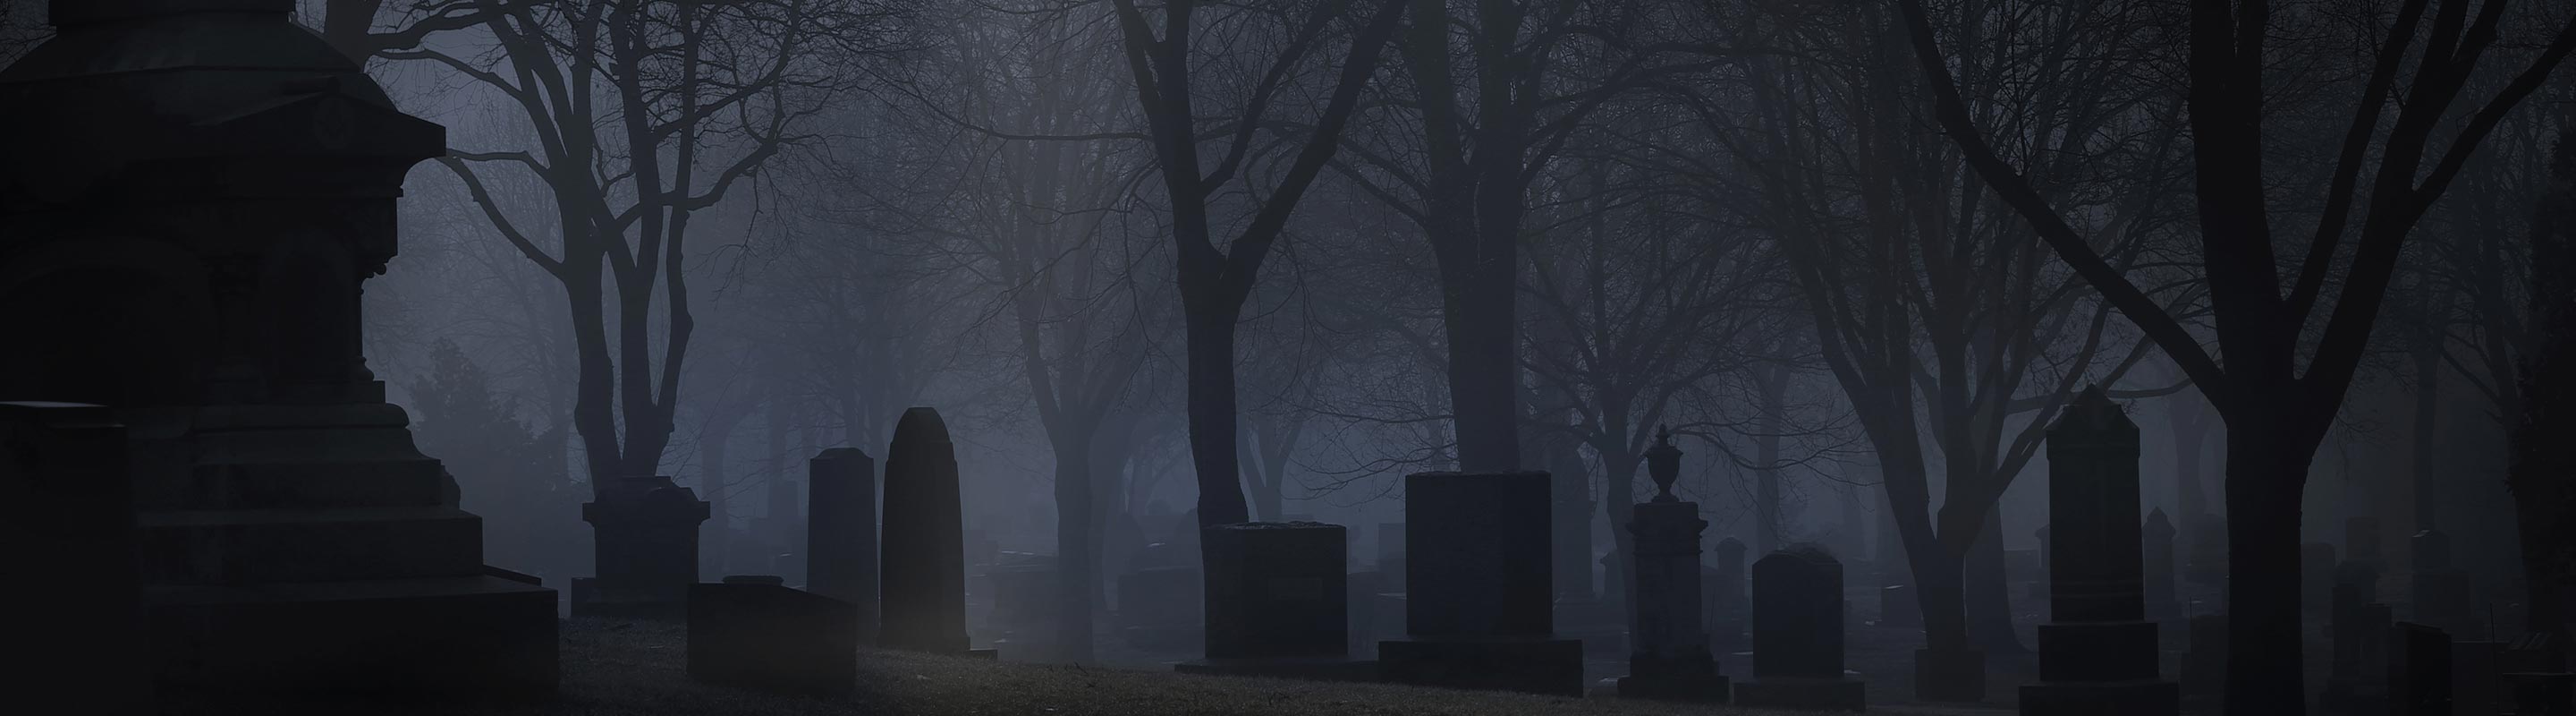 Uno de los Cementerios Embrujados que visitamos en nuestros Tour de Fantasmas en Grupo